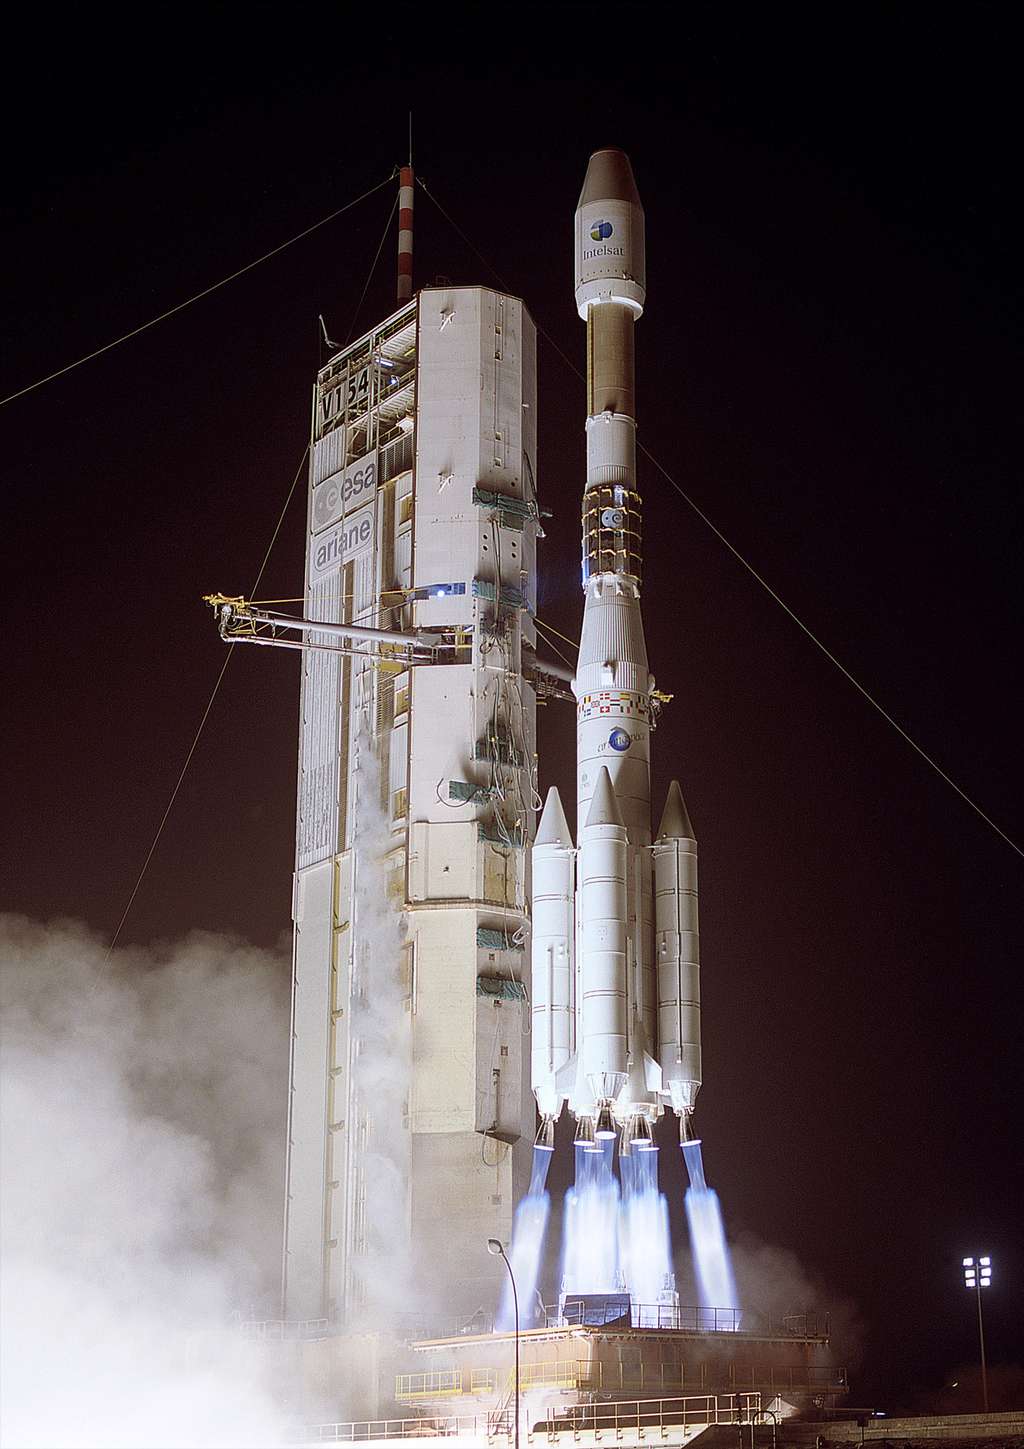  Septembre 2002, un lanceur Ariane 4 lance sur une orbite de transfert géostationnaire le satellite Intelsat 906, d'une masse au lancement de 4,7 tonnes. © Esa/Cnes/Arianespace-Service Optique CSG